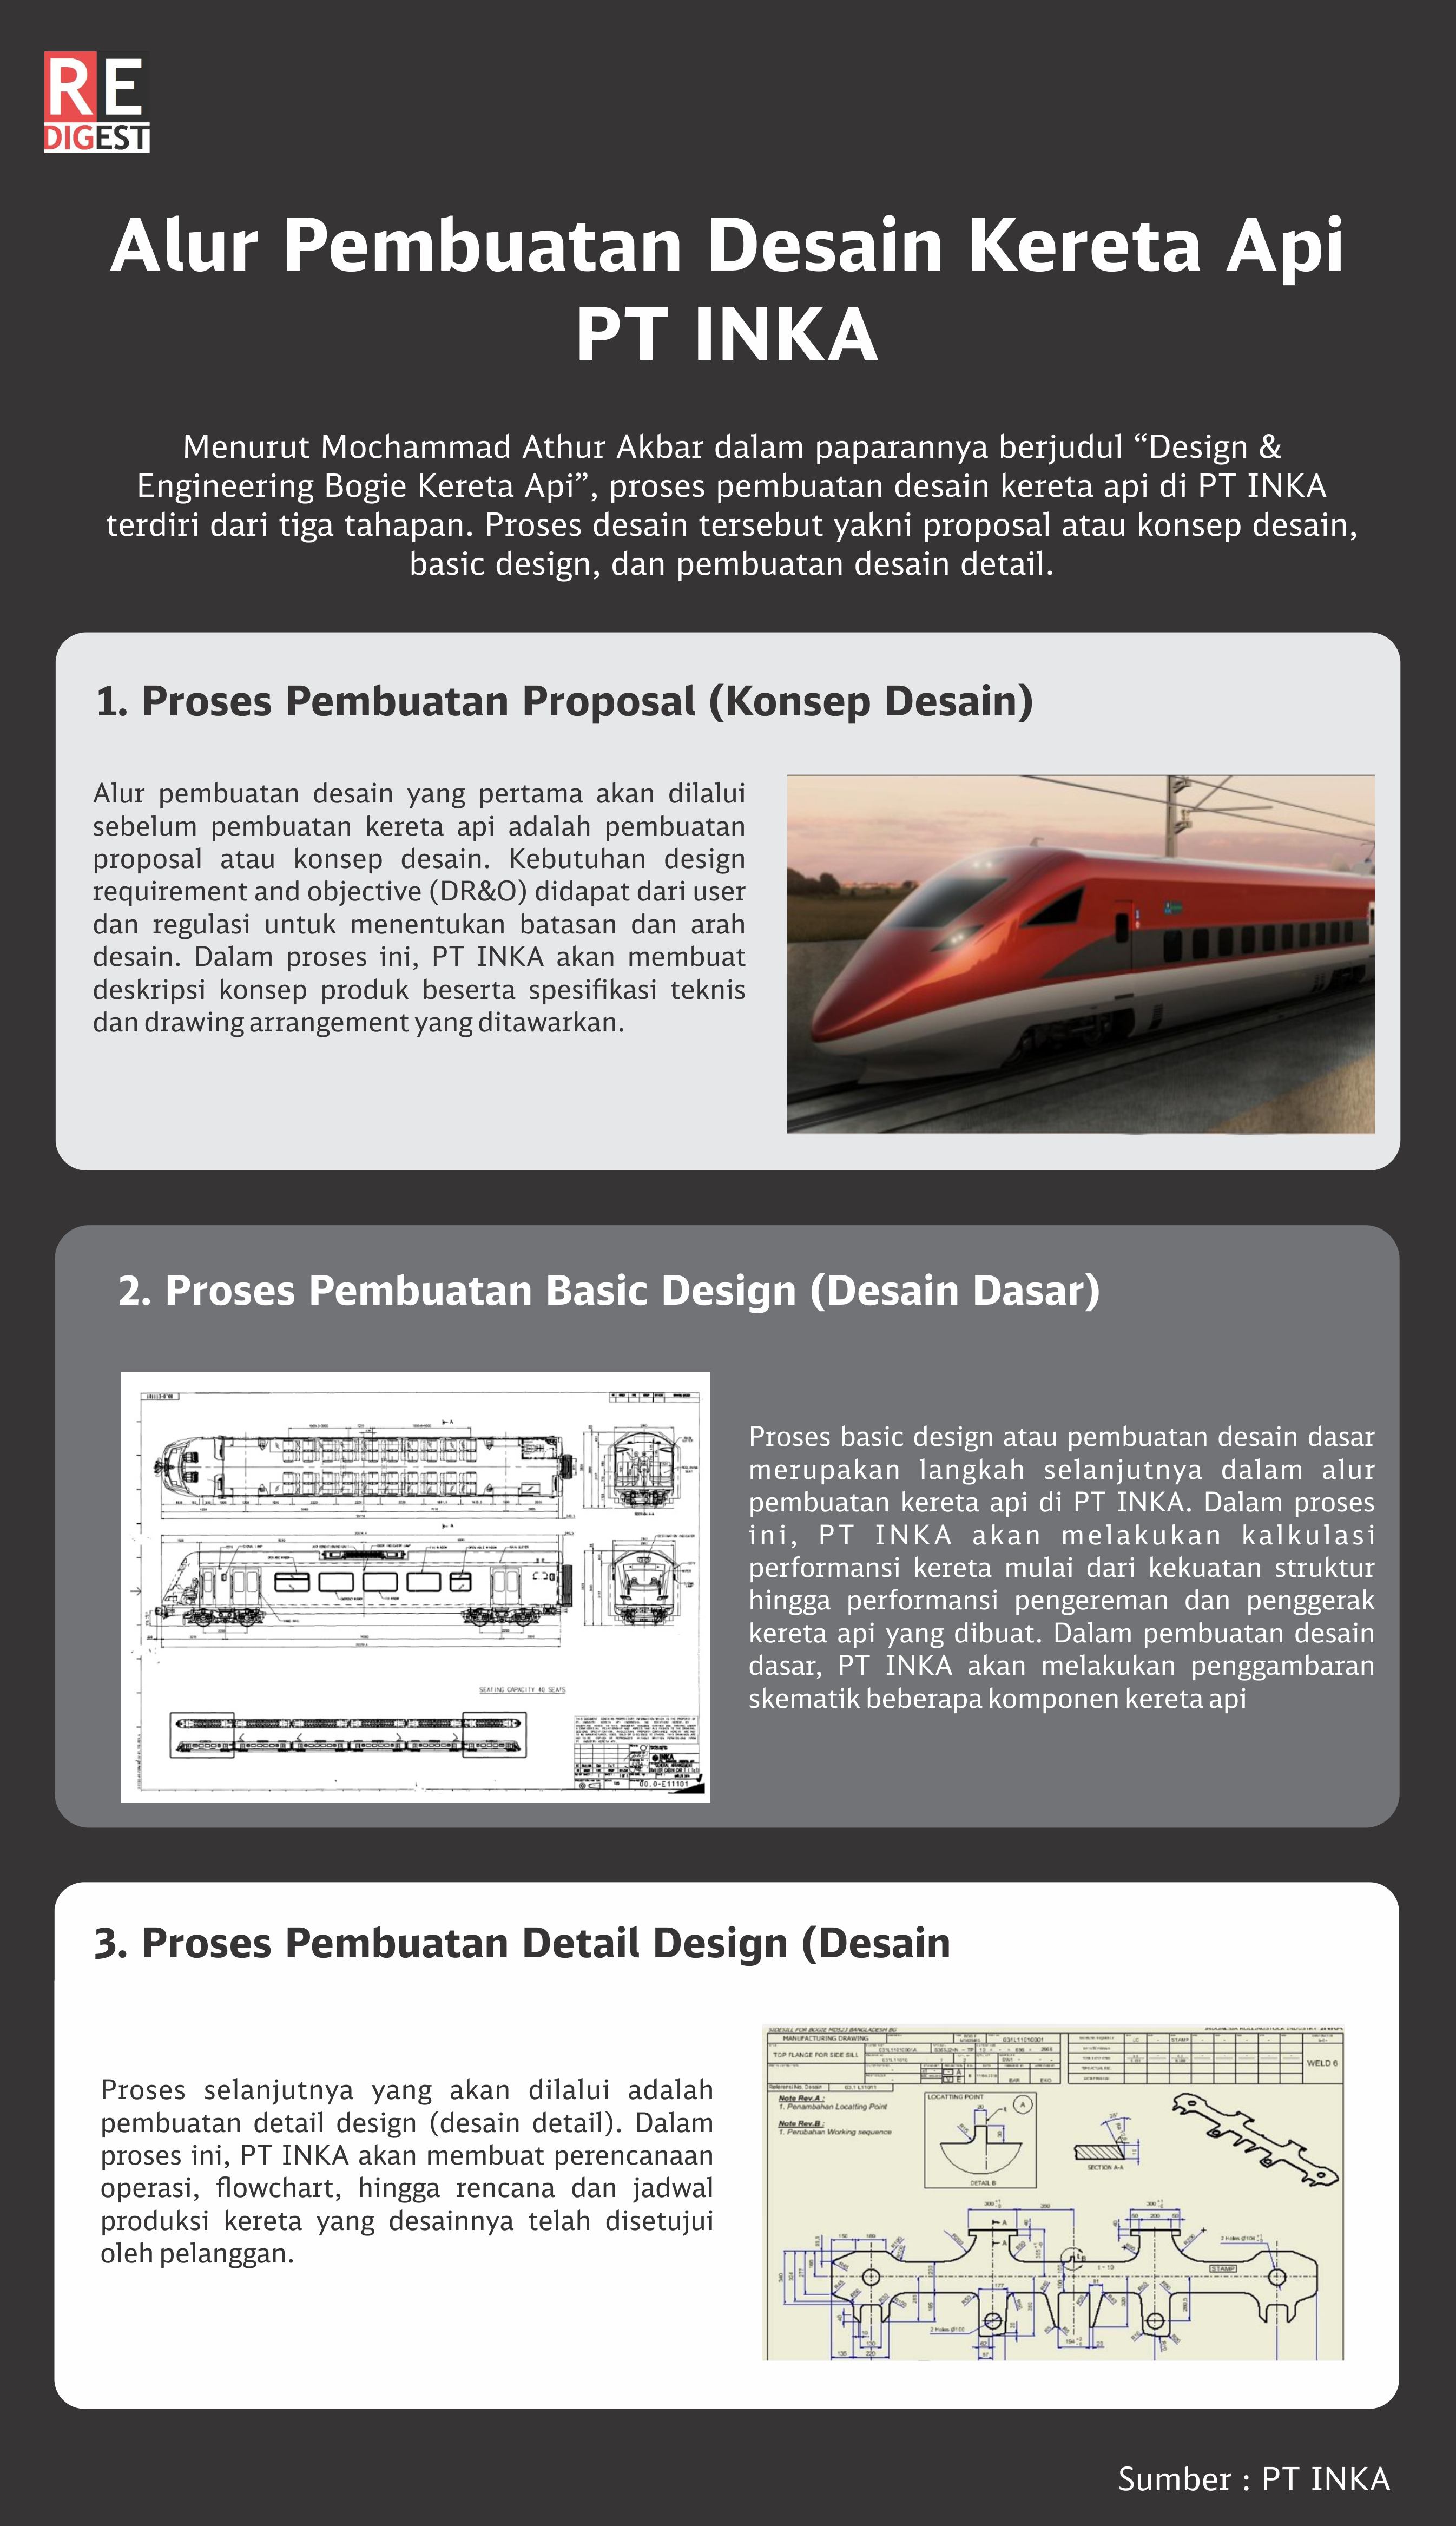 Alur Pembuatan Desain Kereta Api di PT INKA| Infografis oleh Tim REDaksi